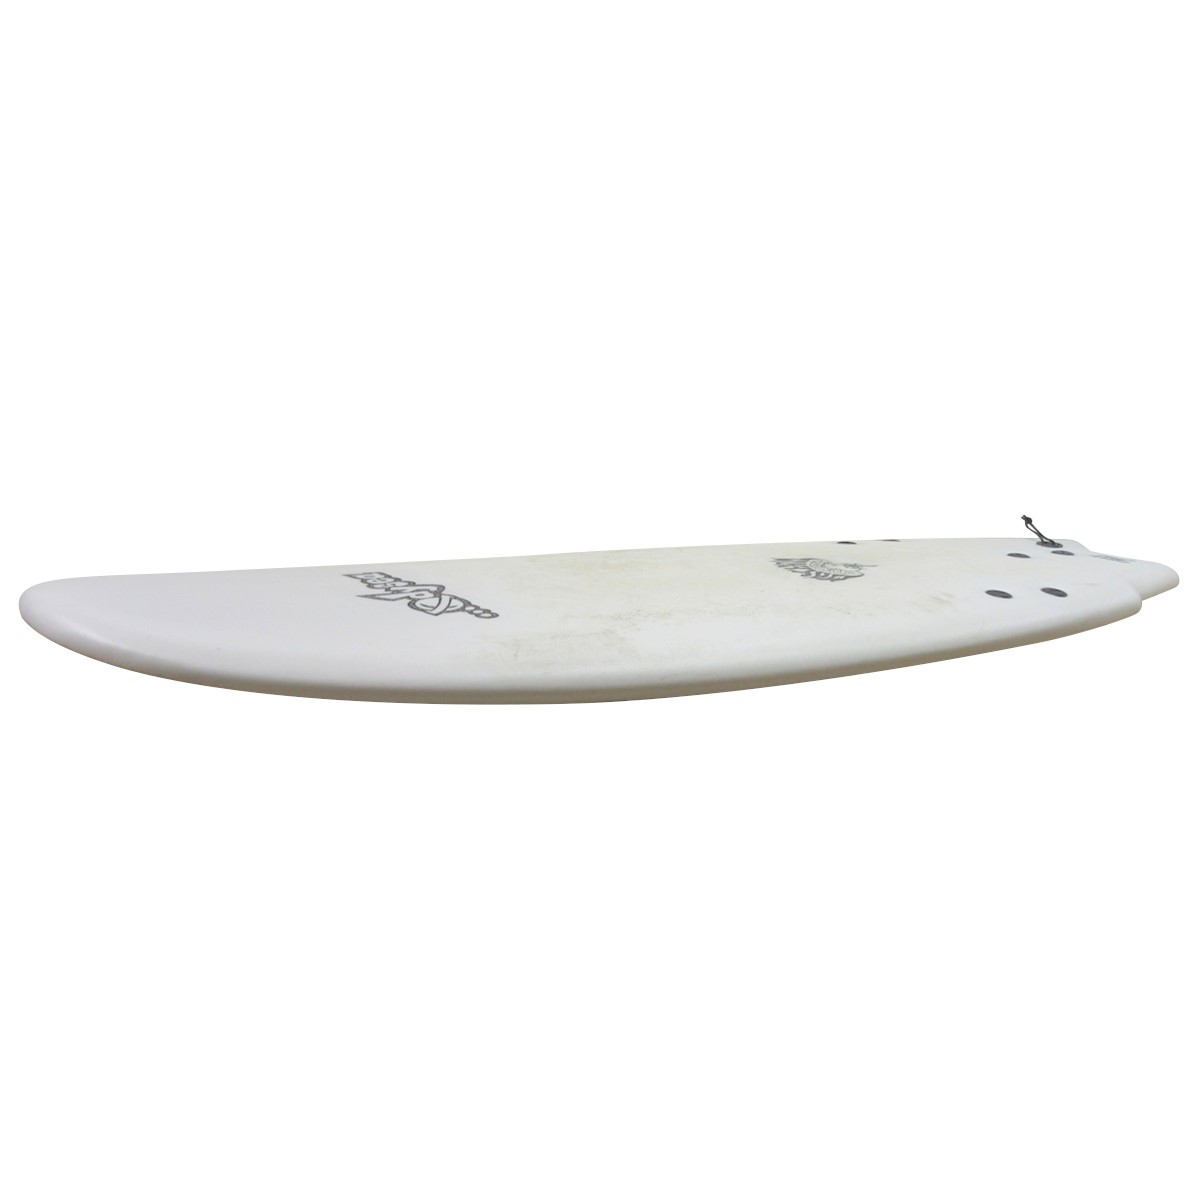 CATCH SURF / ODYSEA x LOST RNF 5`5